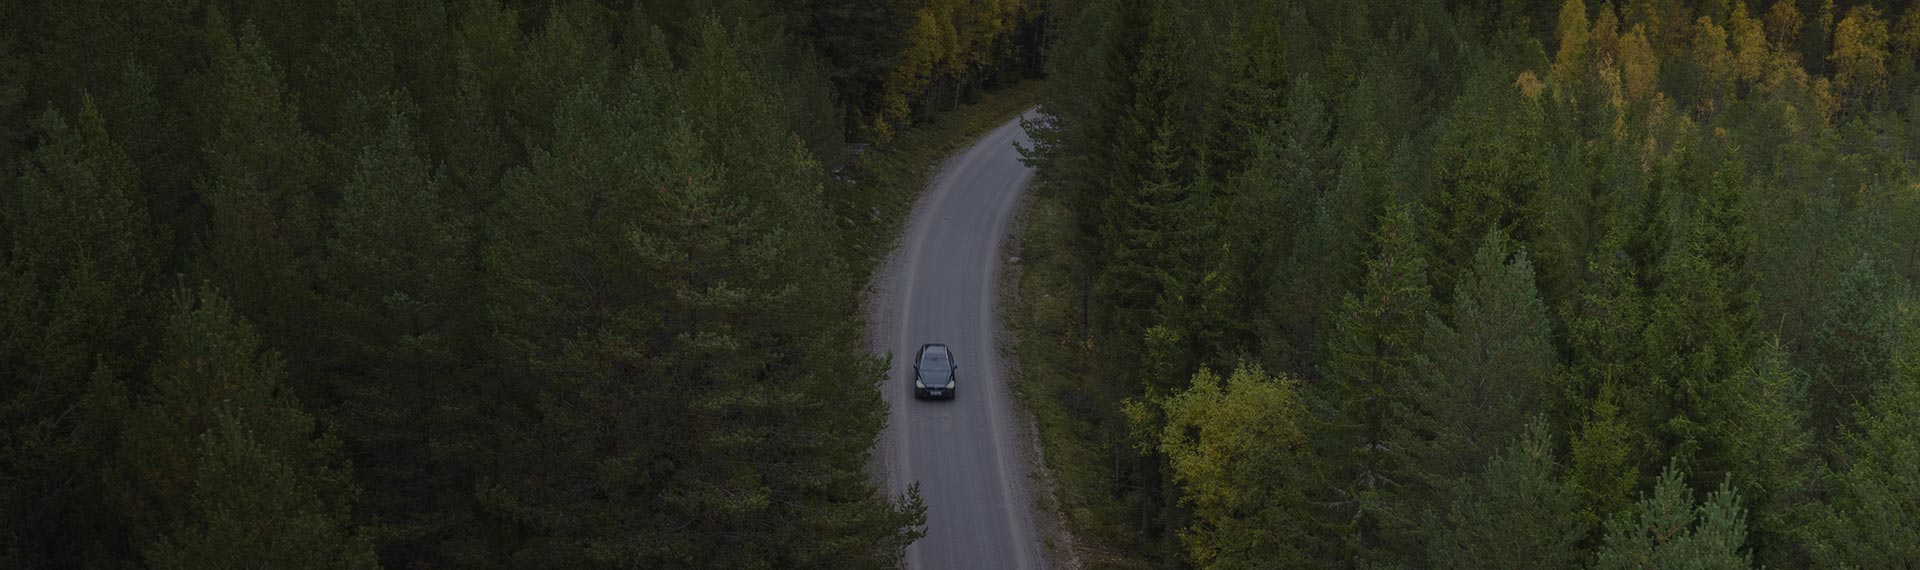 Auto fährt auf einer Straße im Wald